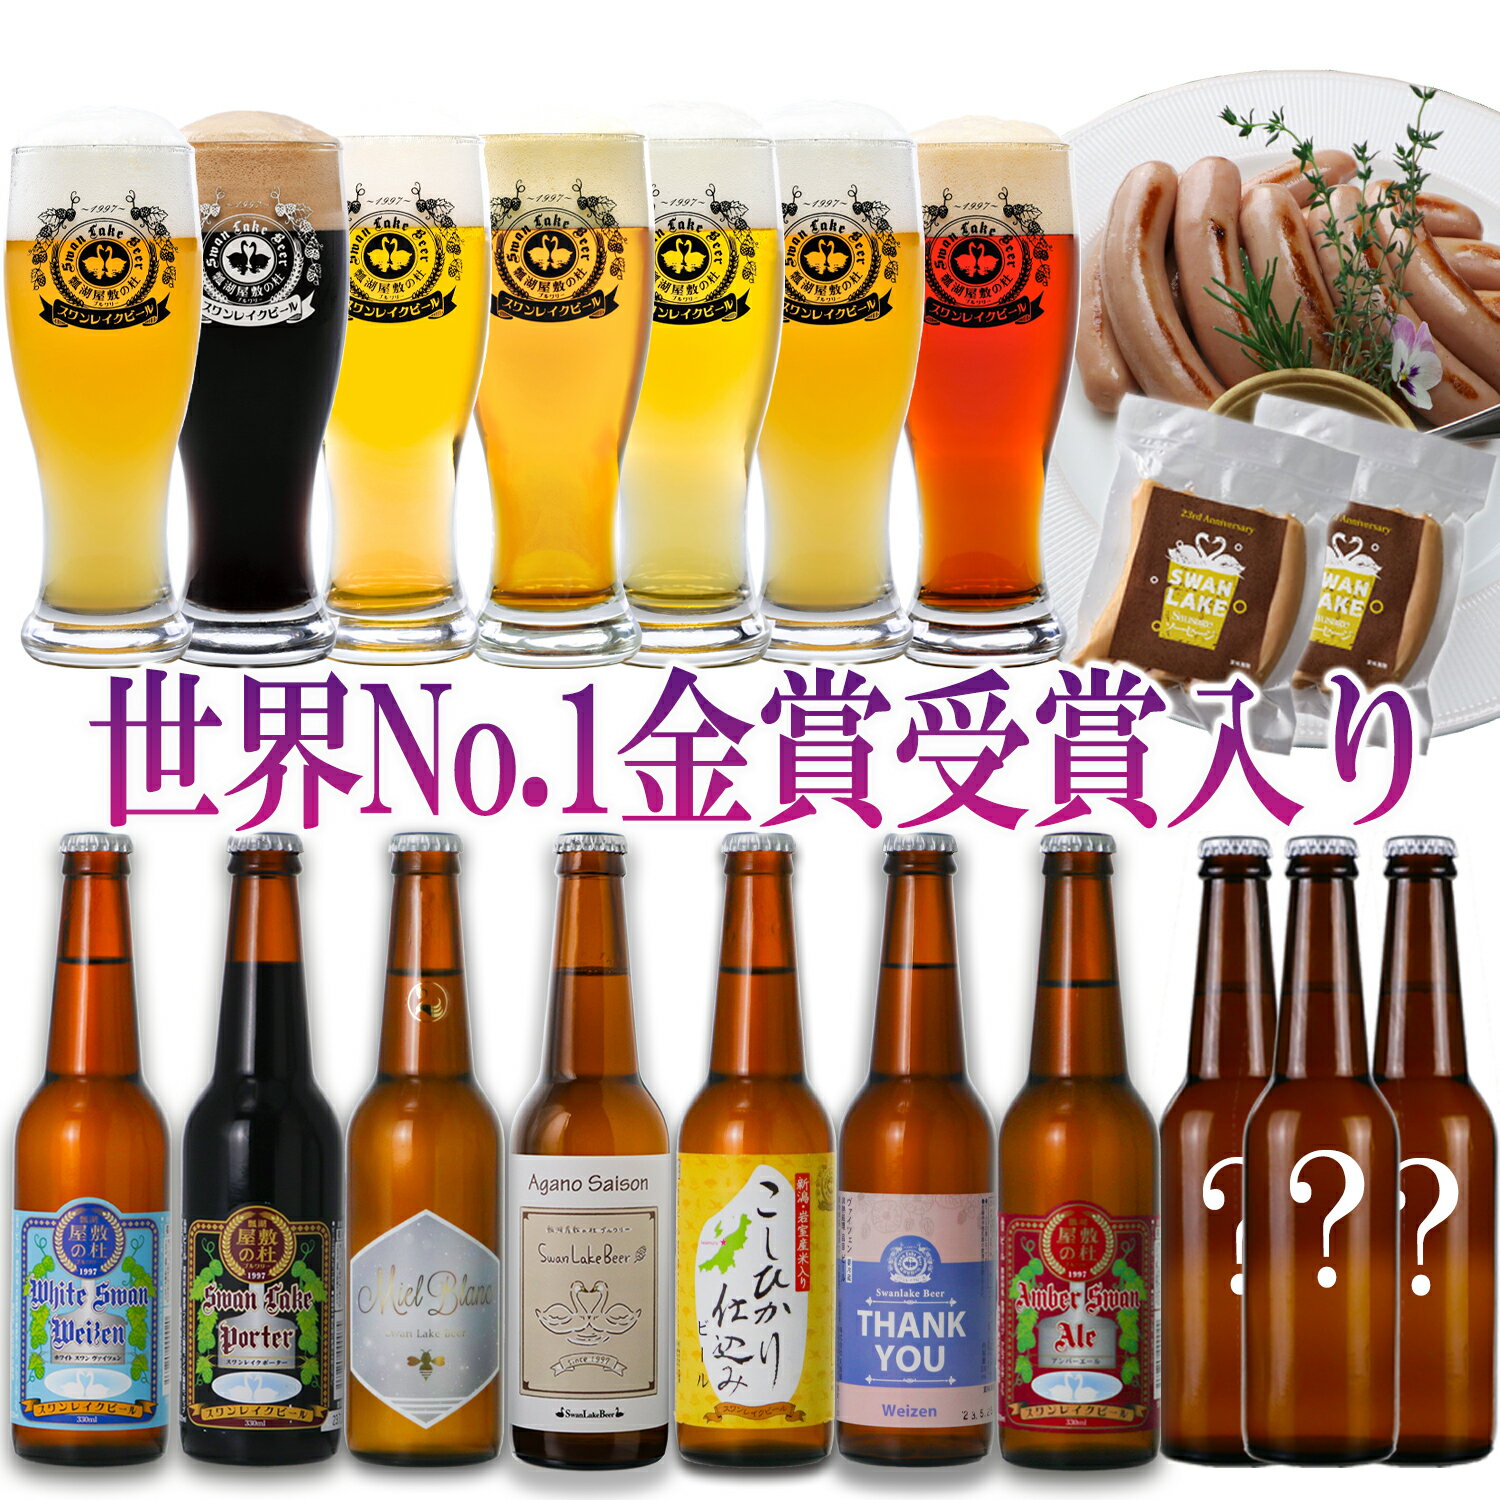 エール ラガー 黒ビール ポーター IPA 世界一金賞受賞 6種以上のクラ...